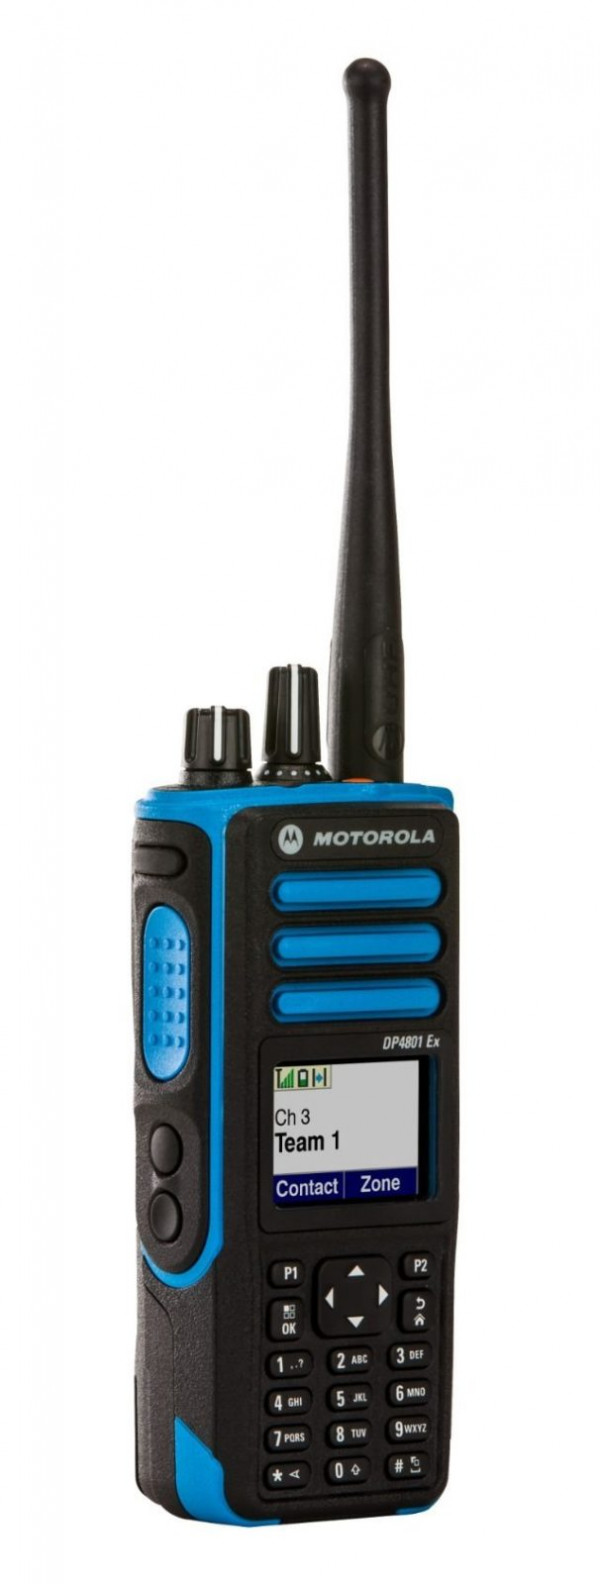 Портативная радиостанция Motorola DP4801Ex ATEX - 2.